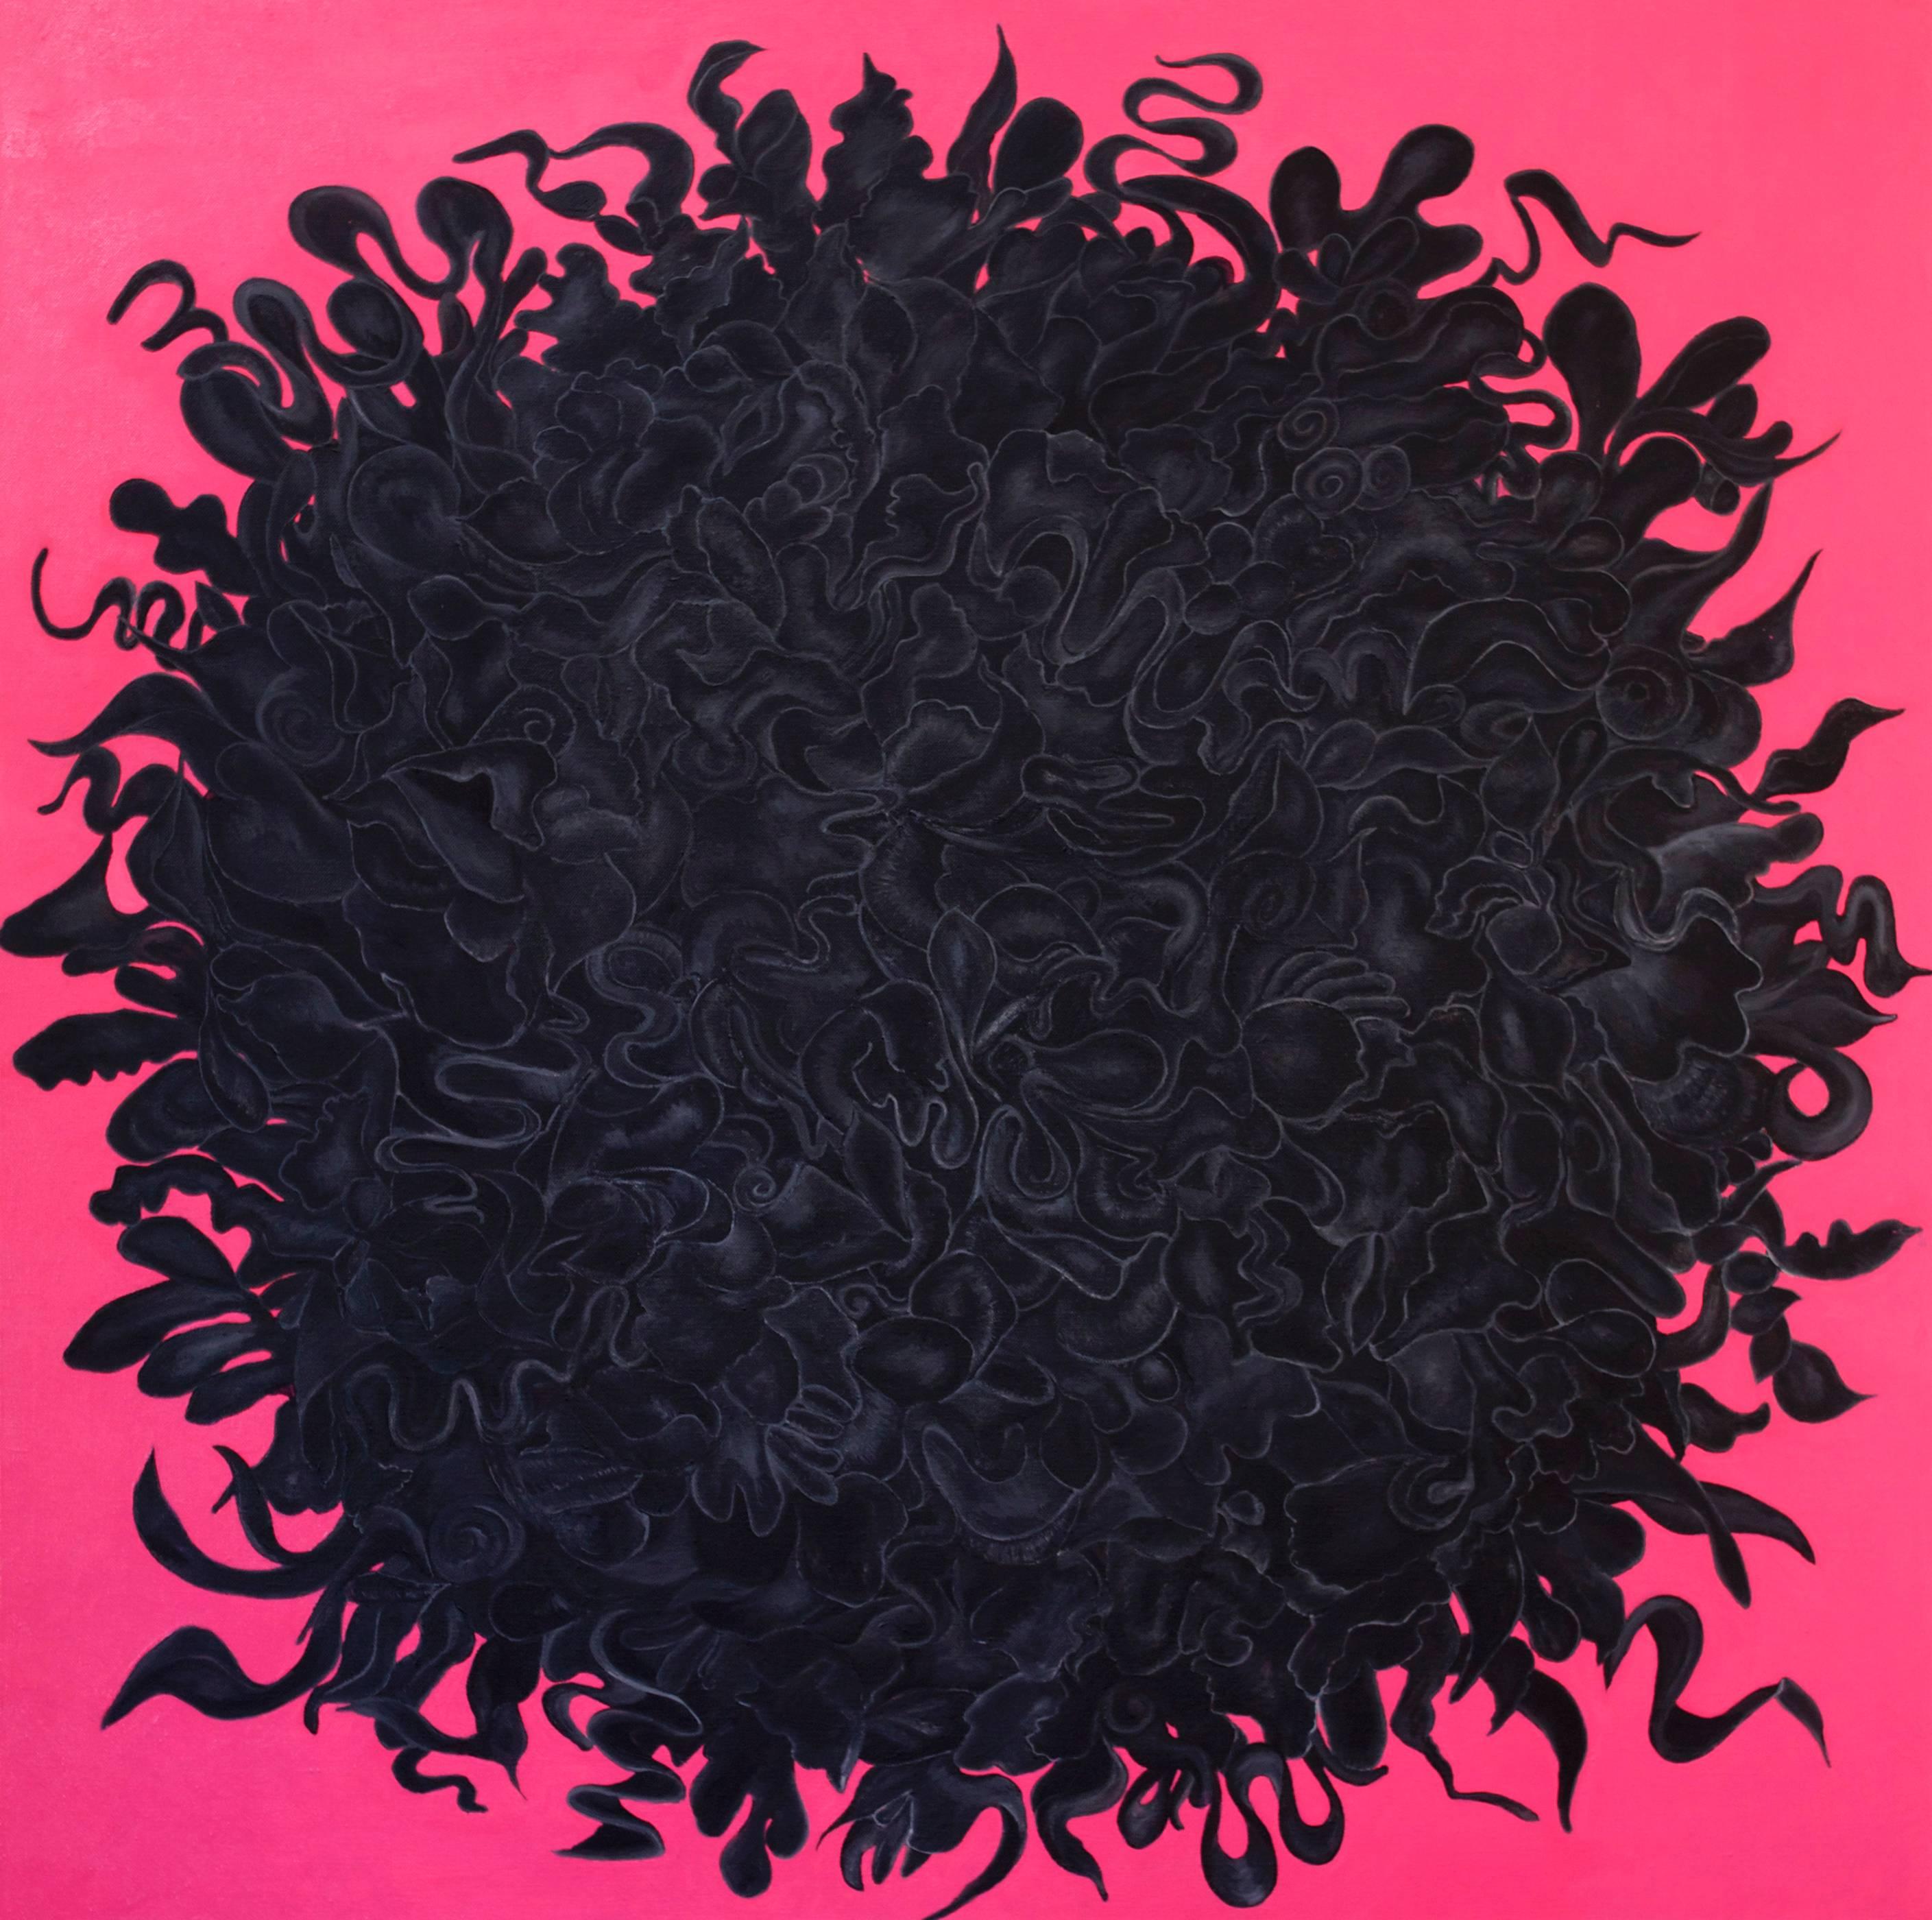 Abstract Painting Susan Bleakley - Peinture à l'huile abstraite rose et noire